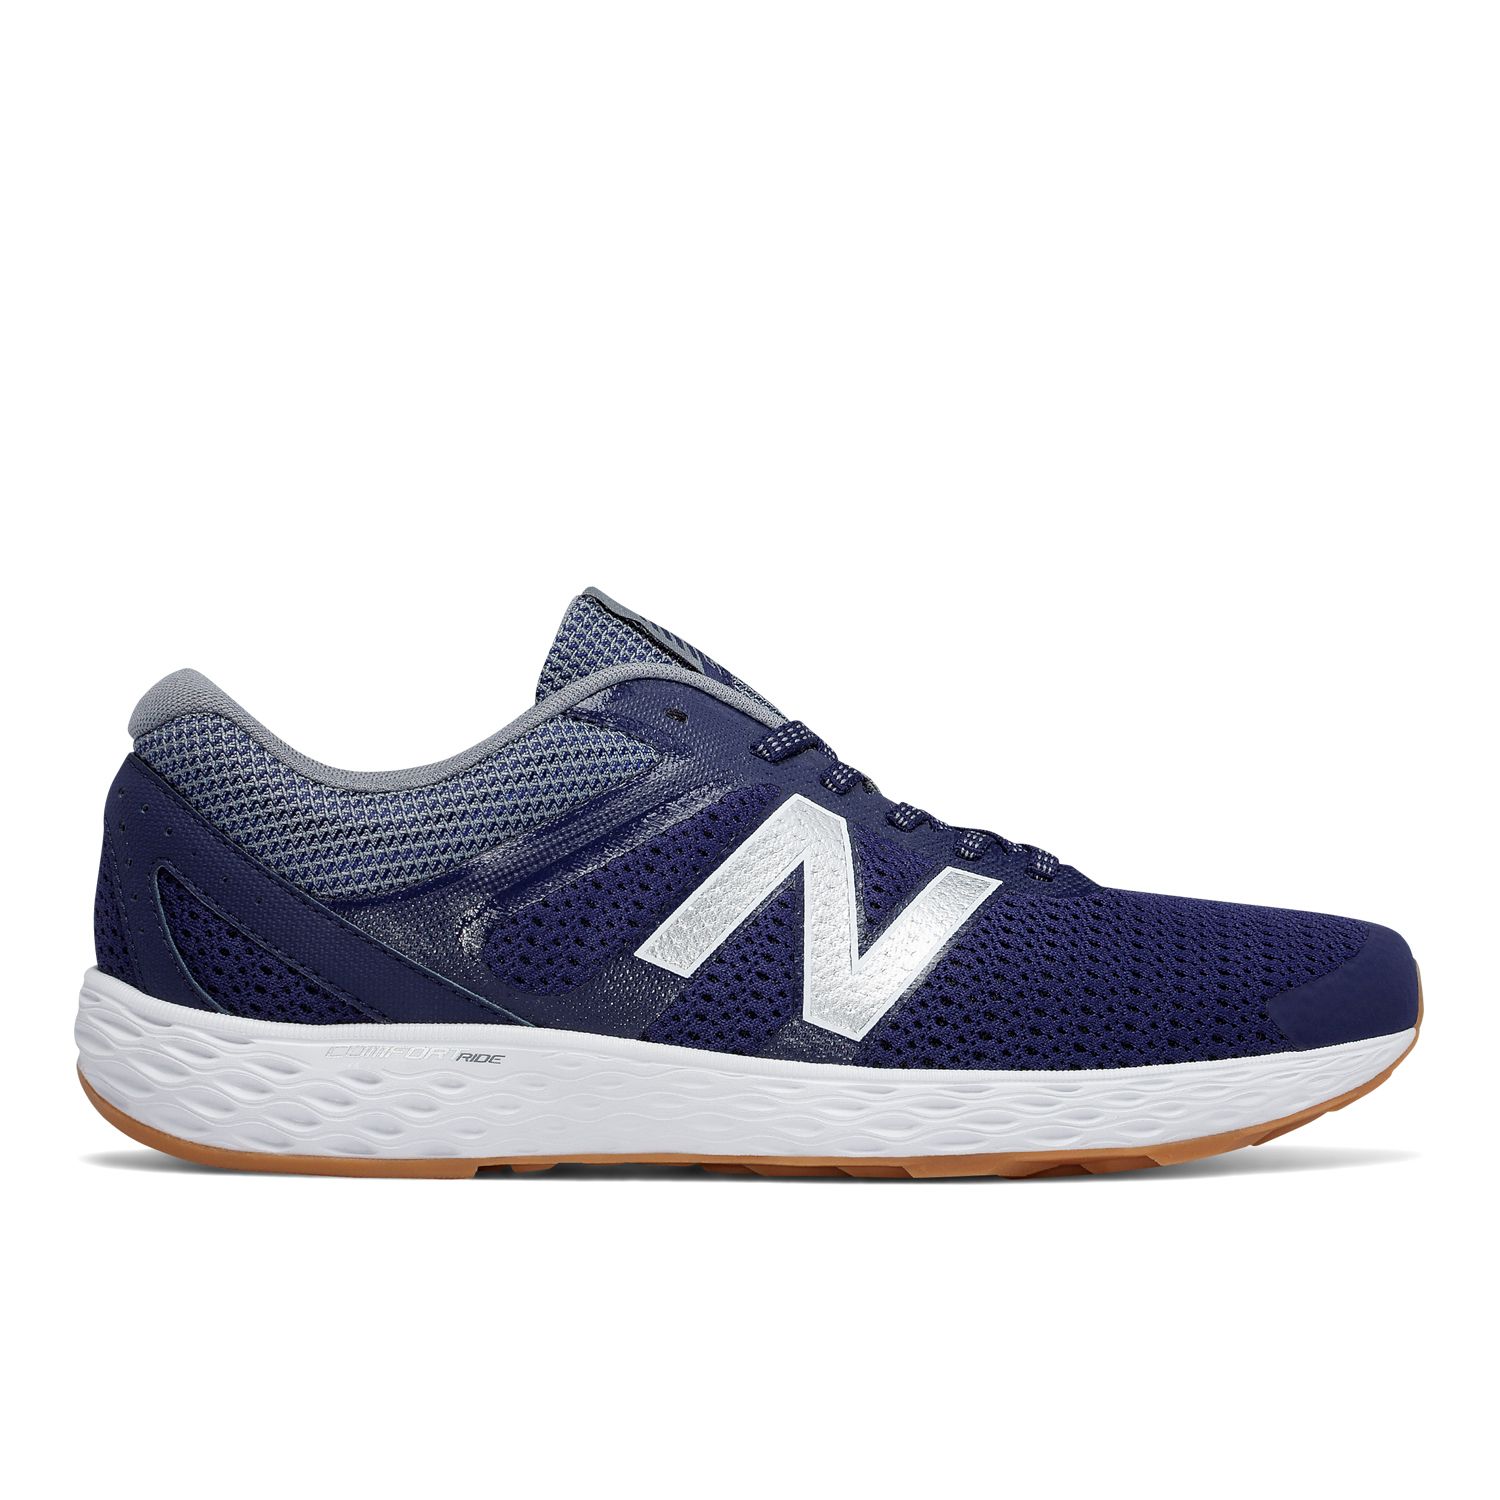 New Balance 520 v3 Men's Running Shoes